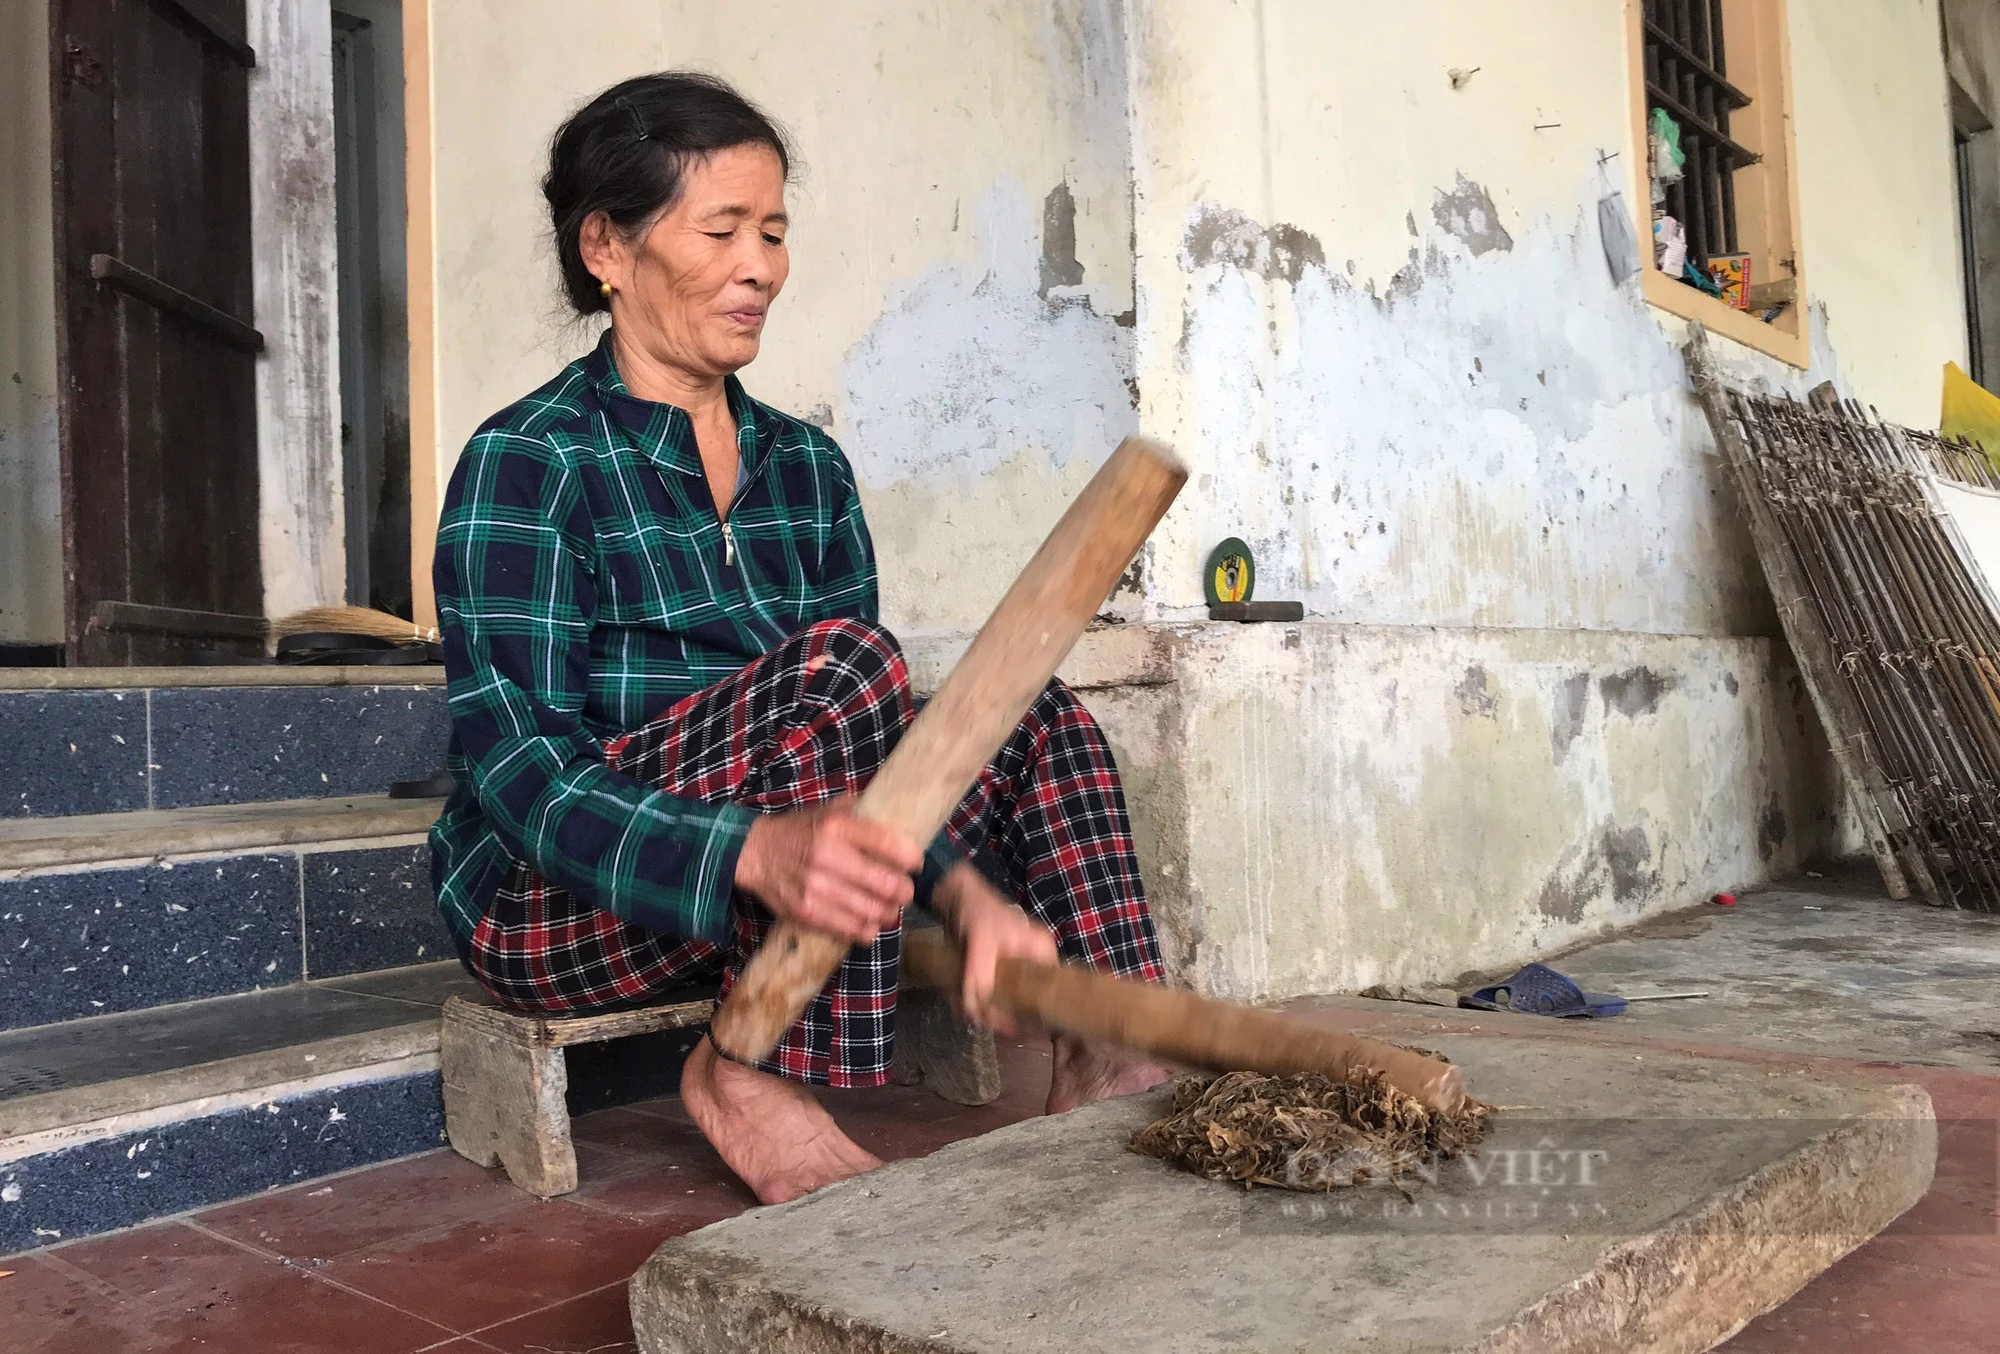 Làng duy nhất ở Nghệ An còn giữ một nghề độc lạ, giã cây lấy nước tráng loại giấy dó mỏng tanh - Ảnh 3.